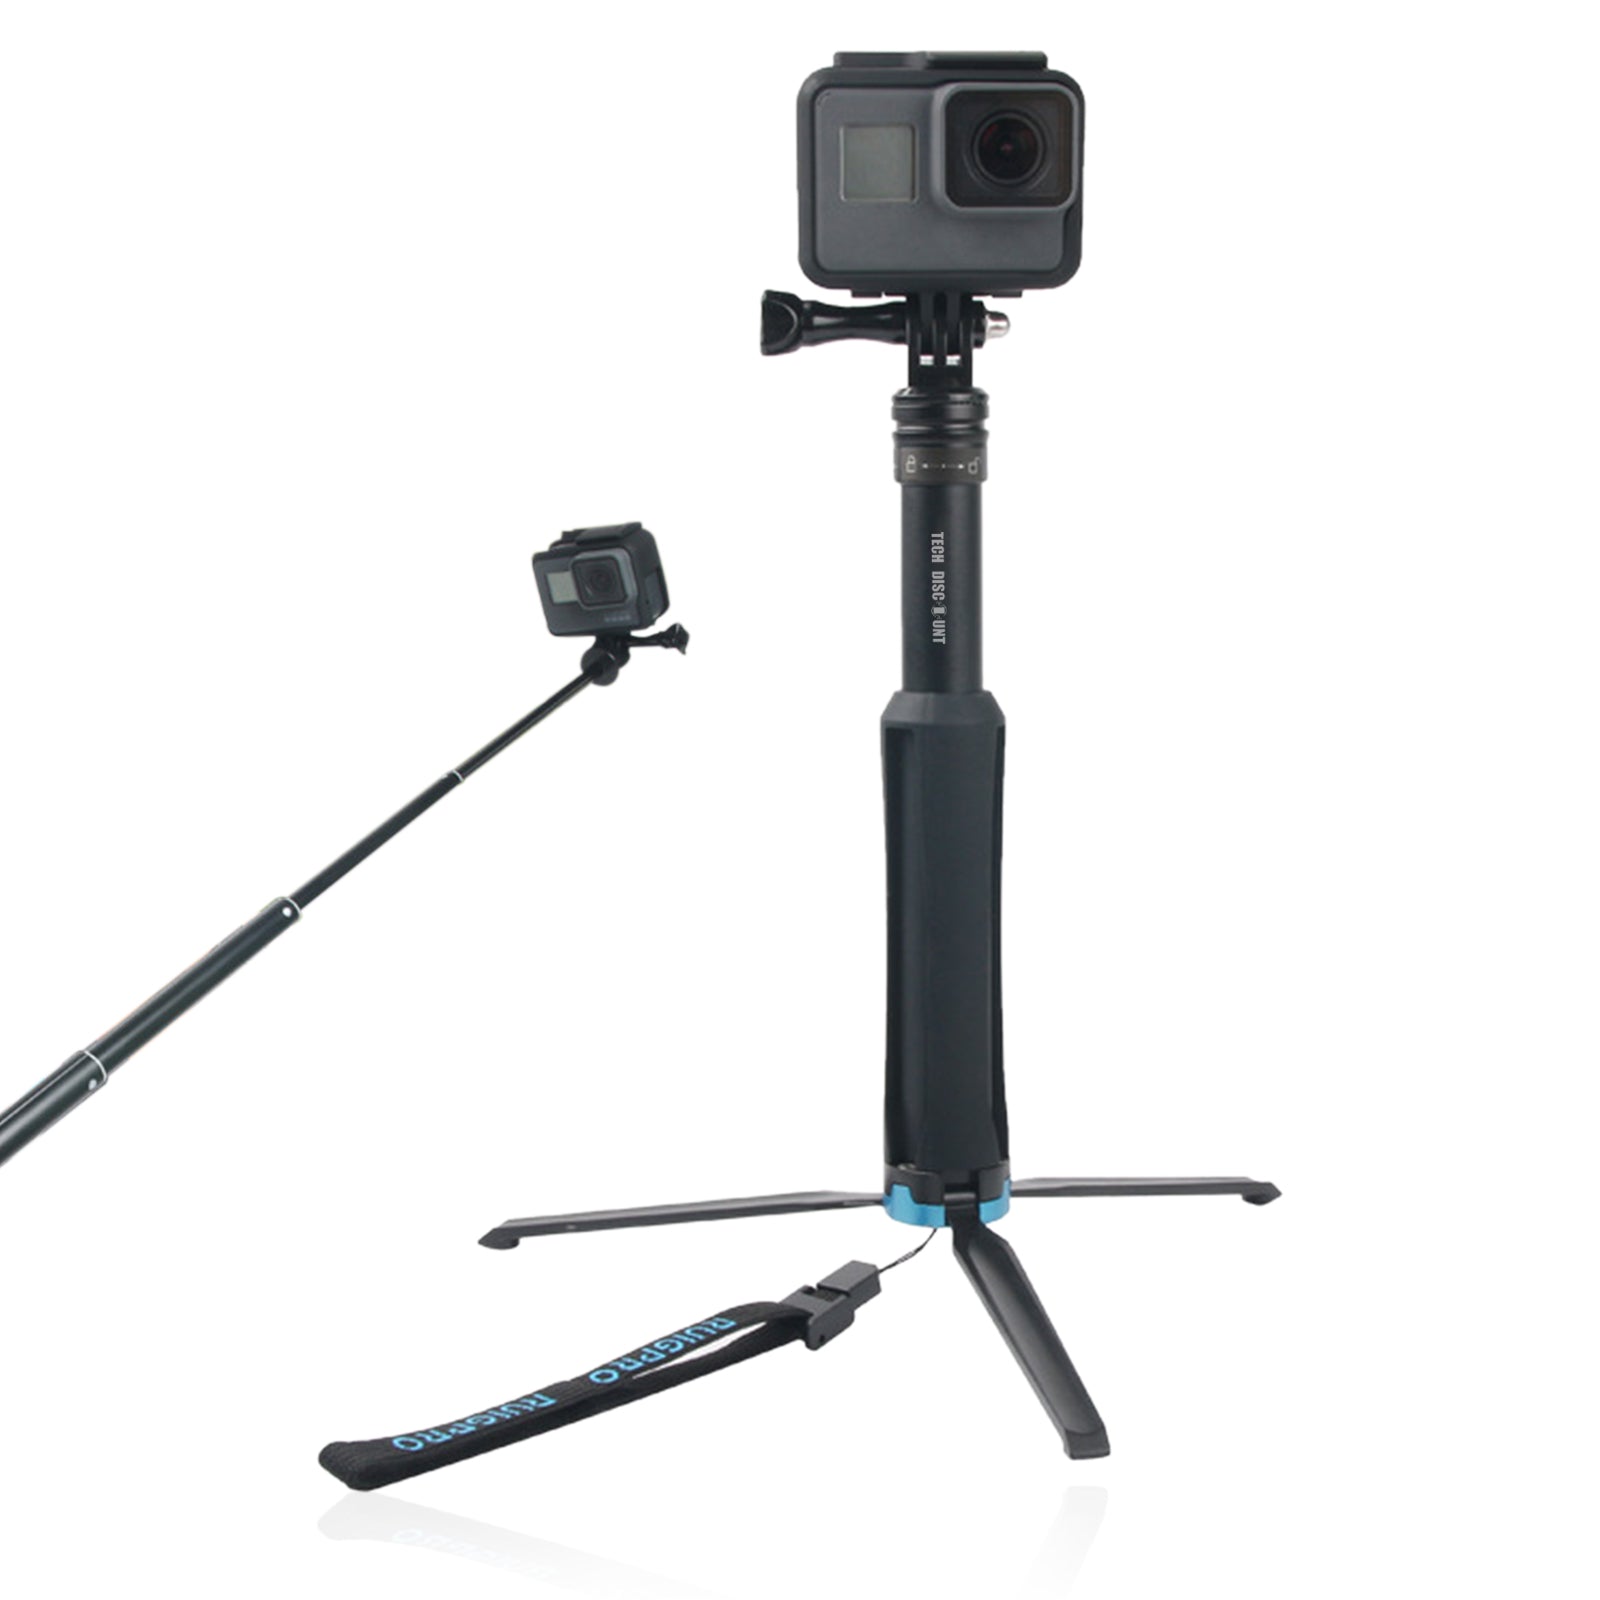 TD® Perche Gopro hero téléphone camera canne stick selfie iphone trepied retardateur photos vidéos extensible professionnel voyages